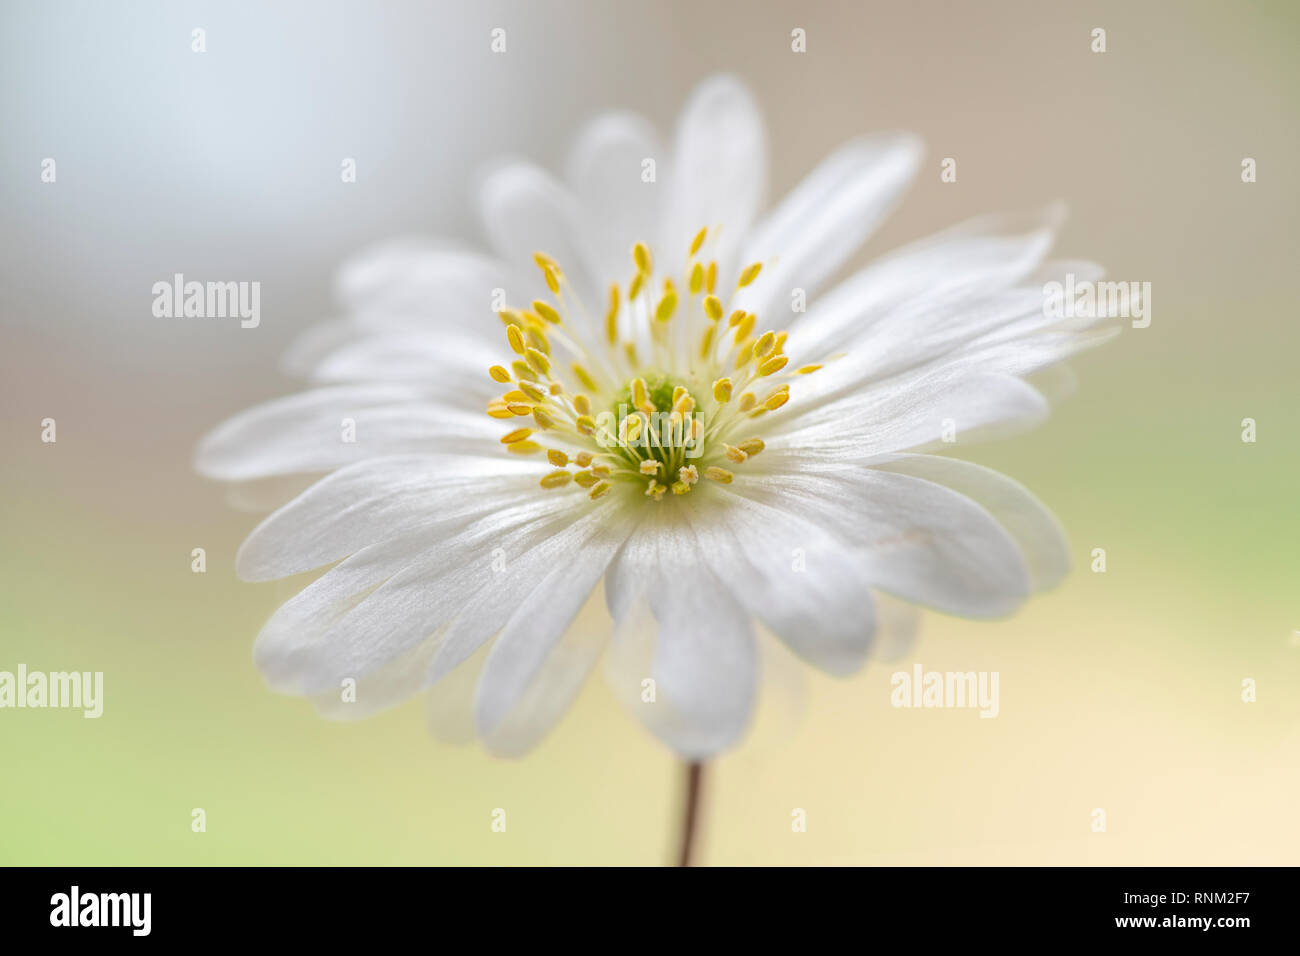 Image de la magnifique printemps, fleur blanche d'Anemone blanda également connu sous le nom de Balkan anemone, Grecian windflower ou hiver windflower Banque D'Images